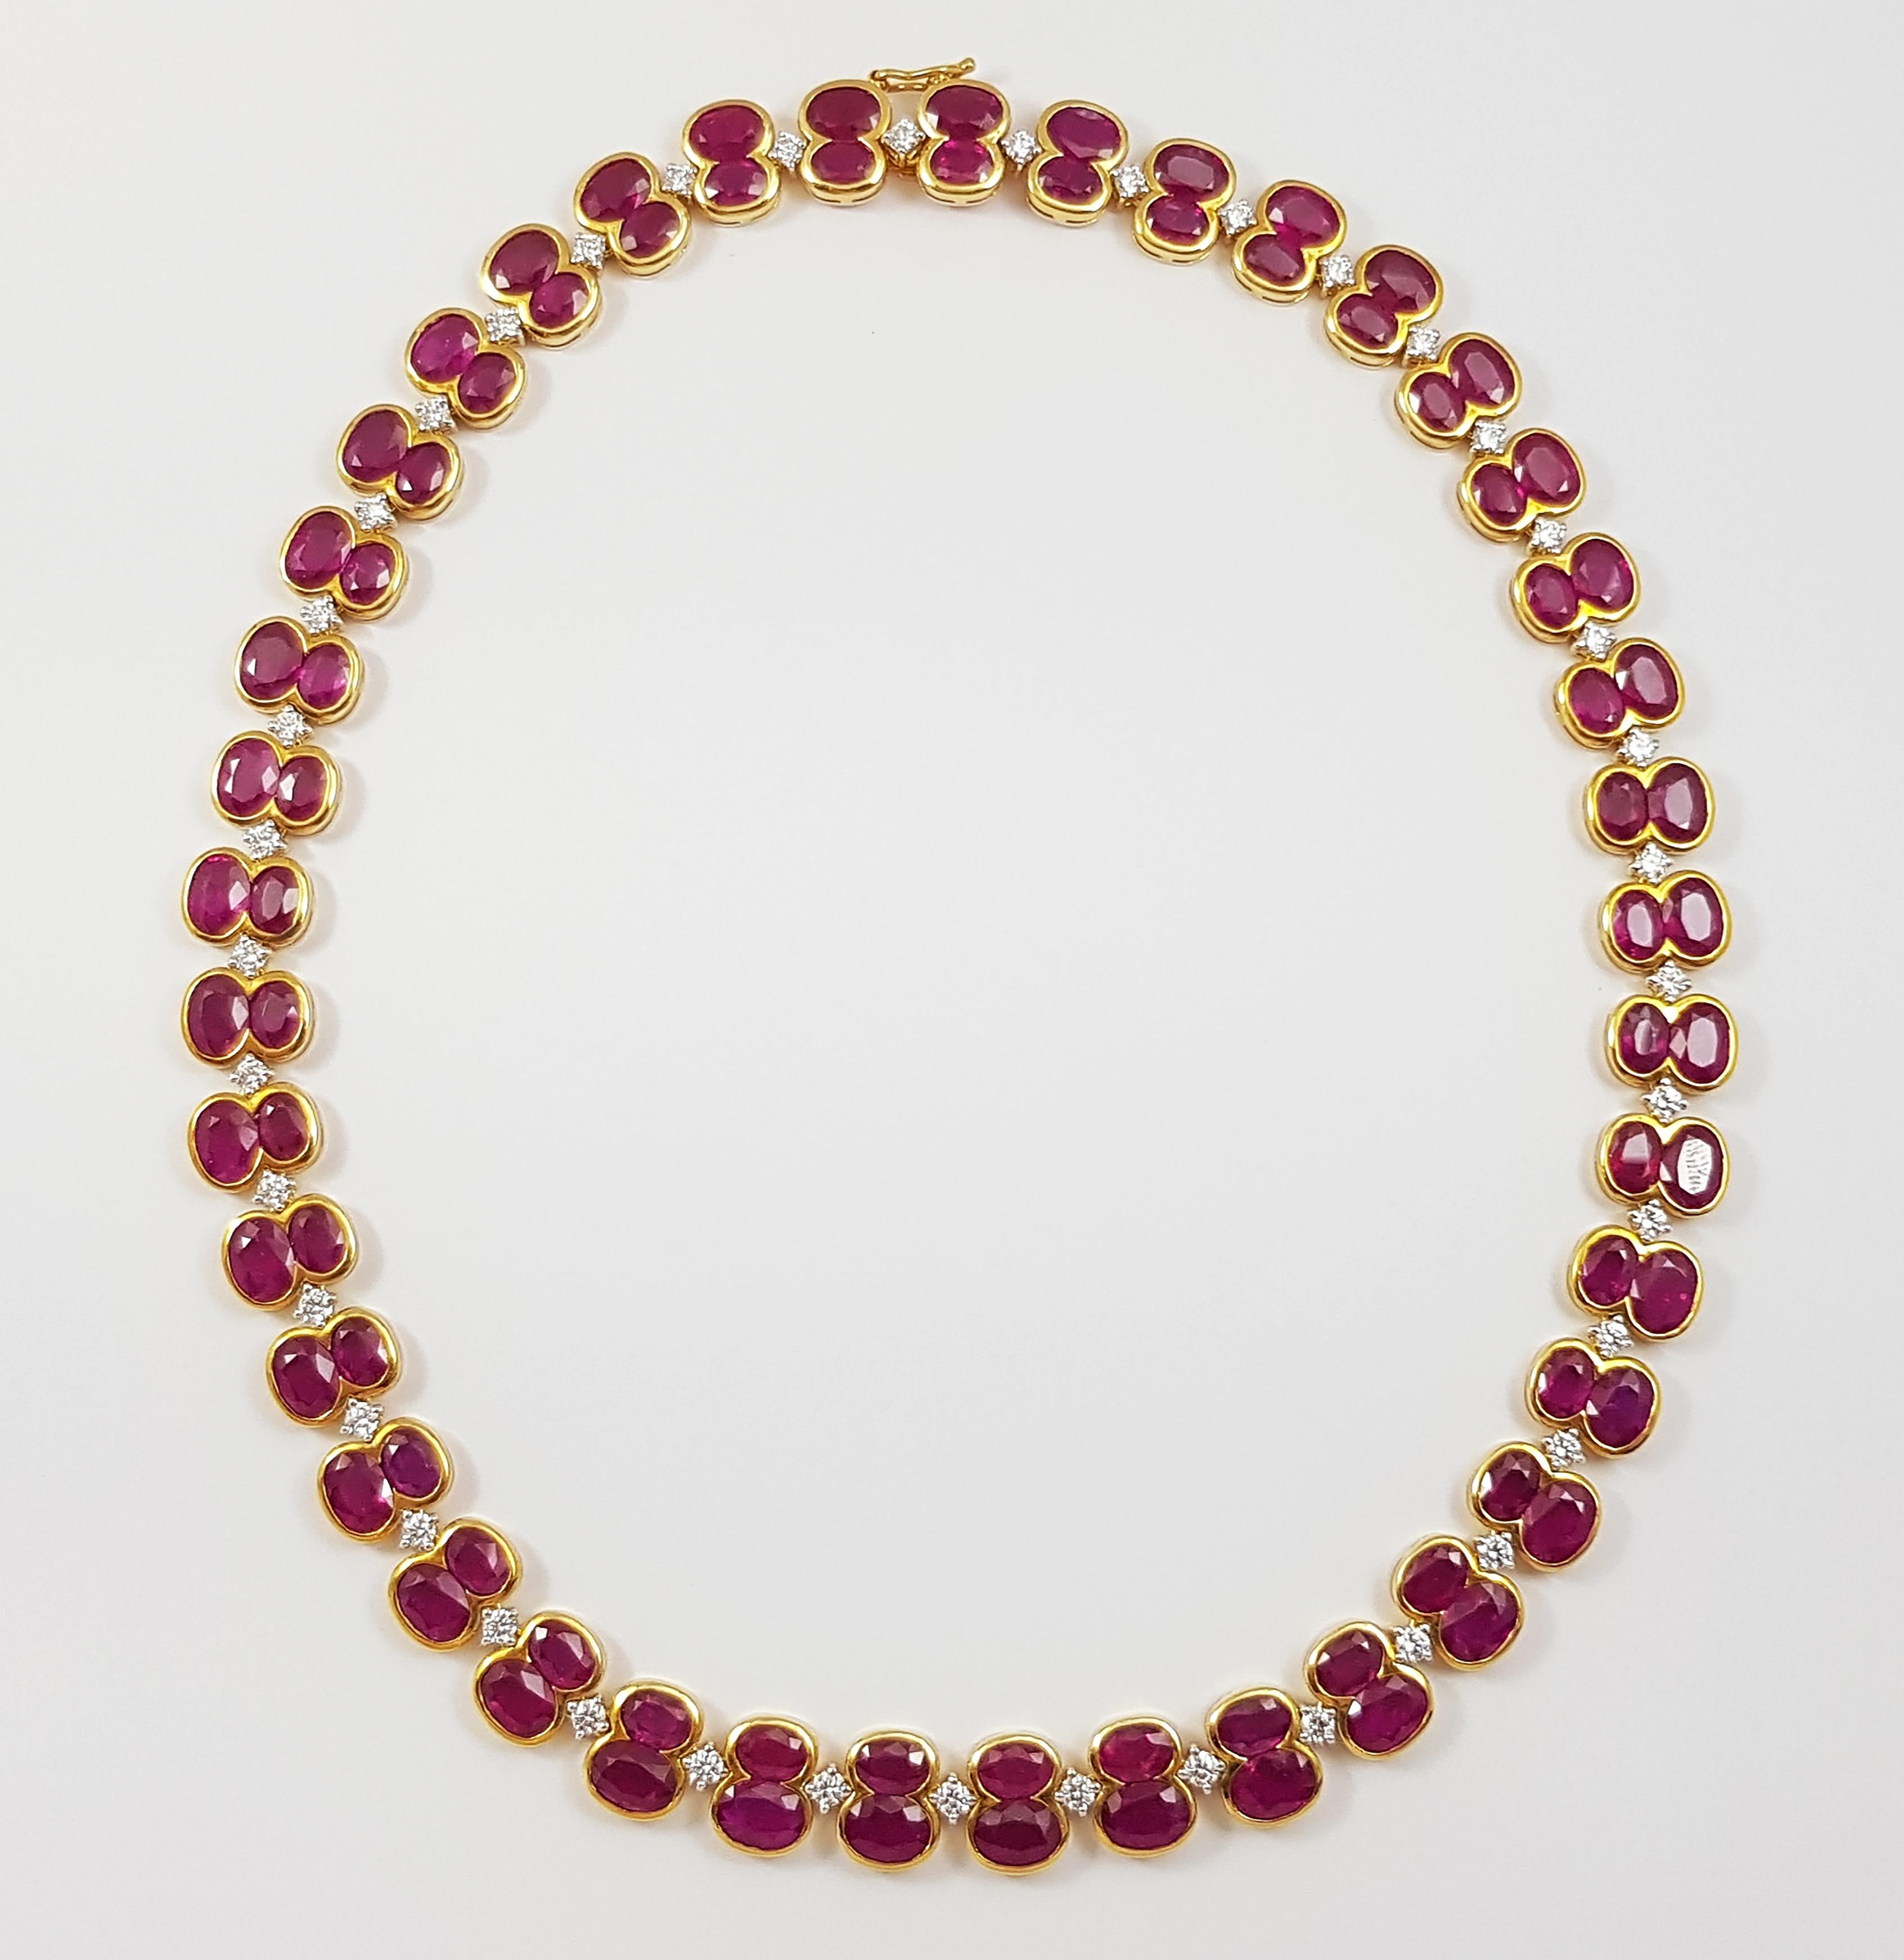 Rubin 65,2 Karat mit Diamant 2,82 Karat Halskette in 18 Karat Goldfassung

Breite:  1.1 cm 
Länge: 40,6 cm
Gesamtgewicht: 67,0 Gramm

